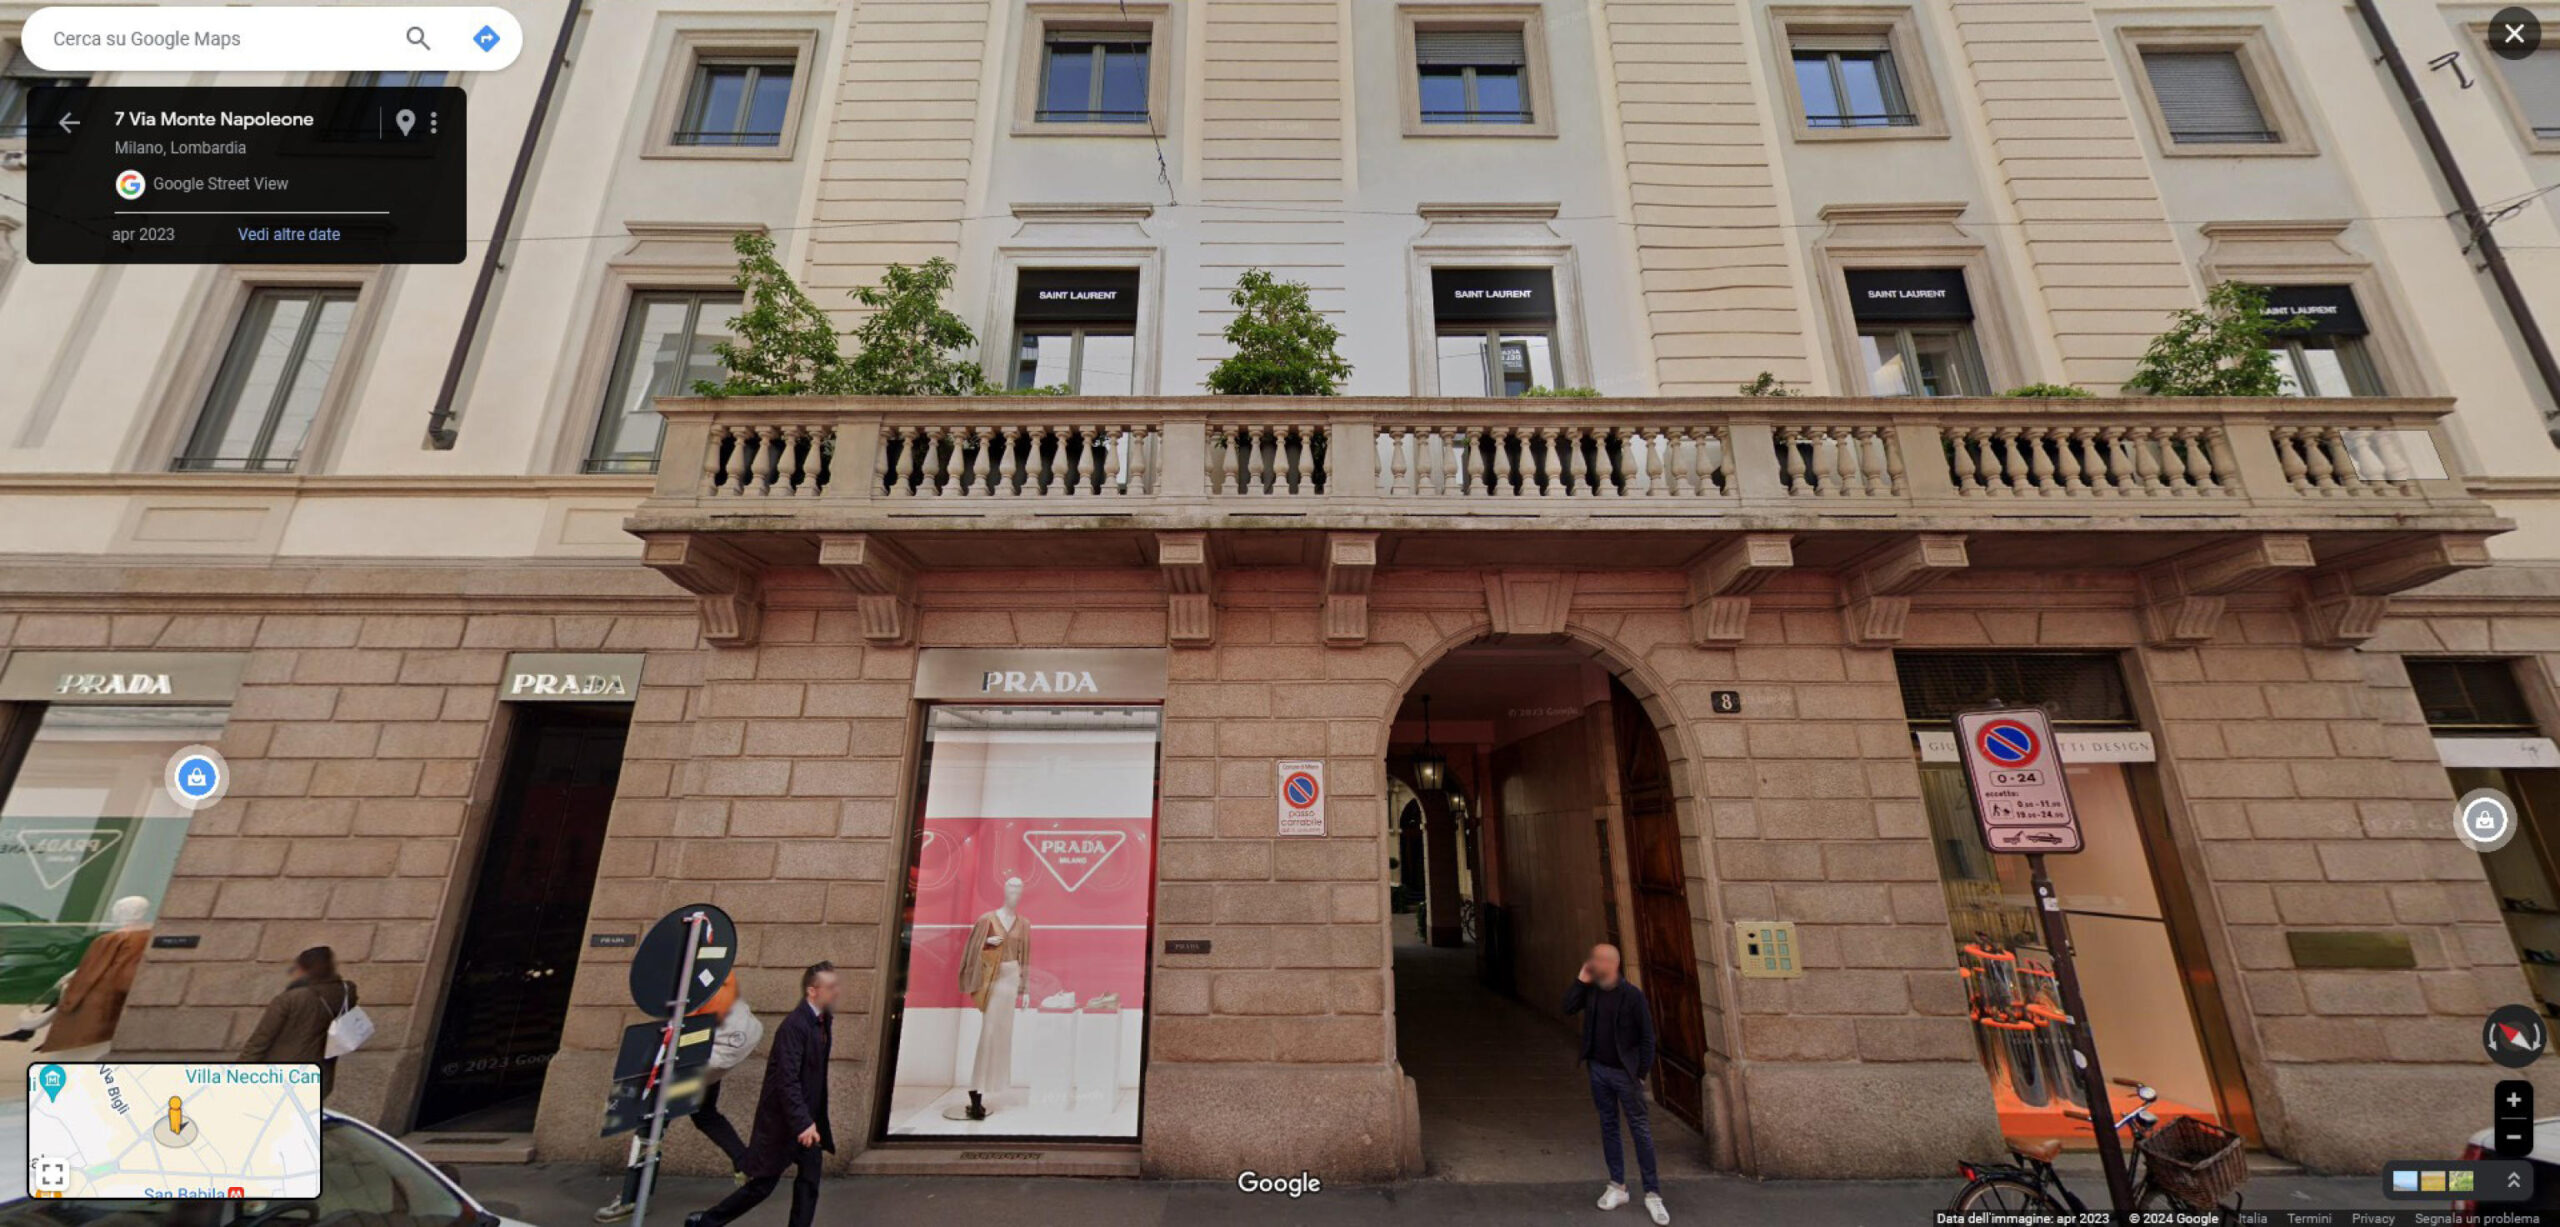 Kering, comprato palazzo storico in via Monte Napoleone a Milano per 1,3 mld